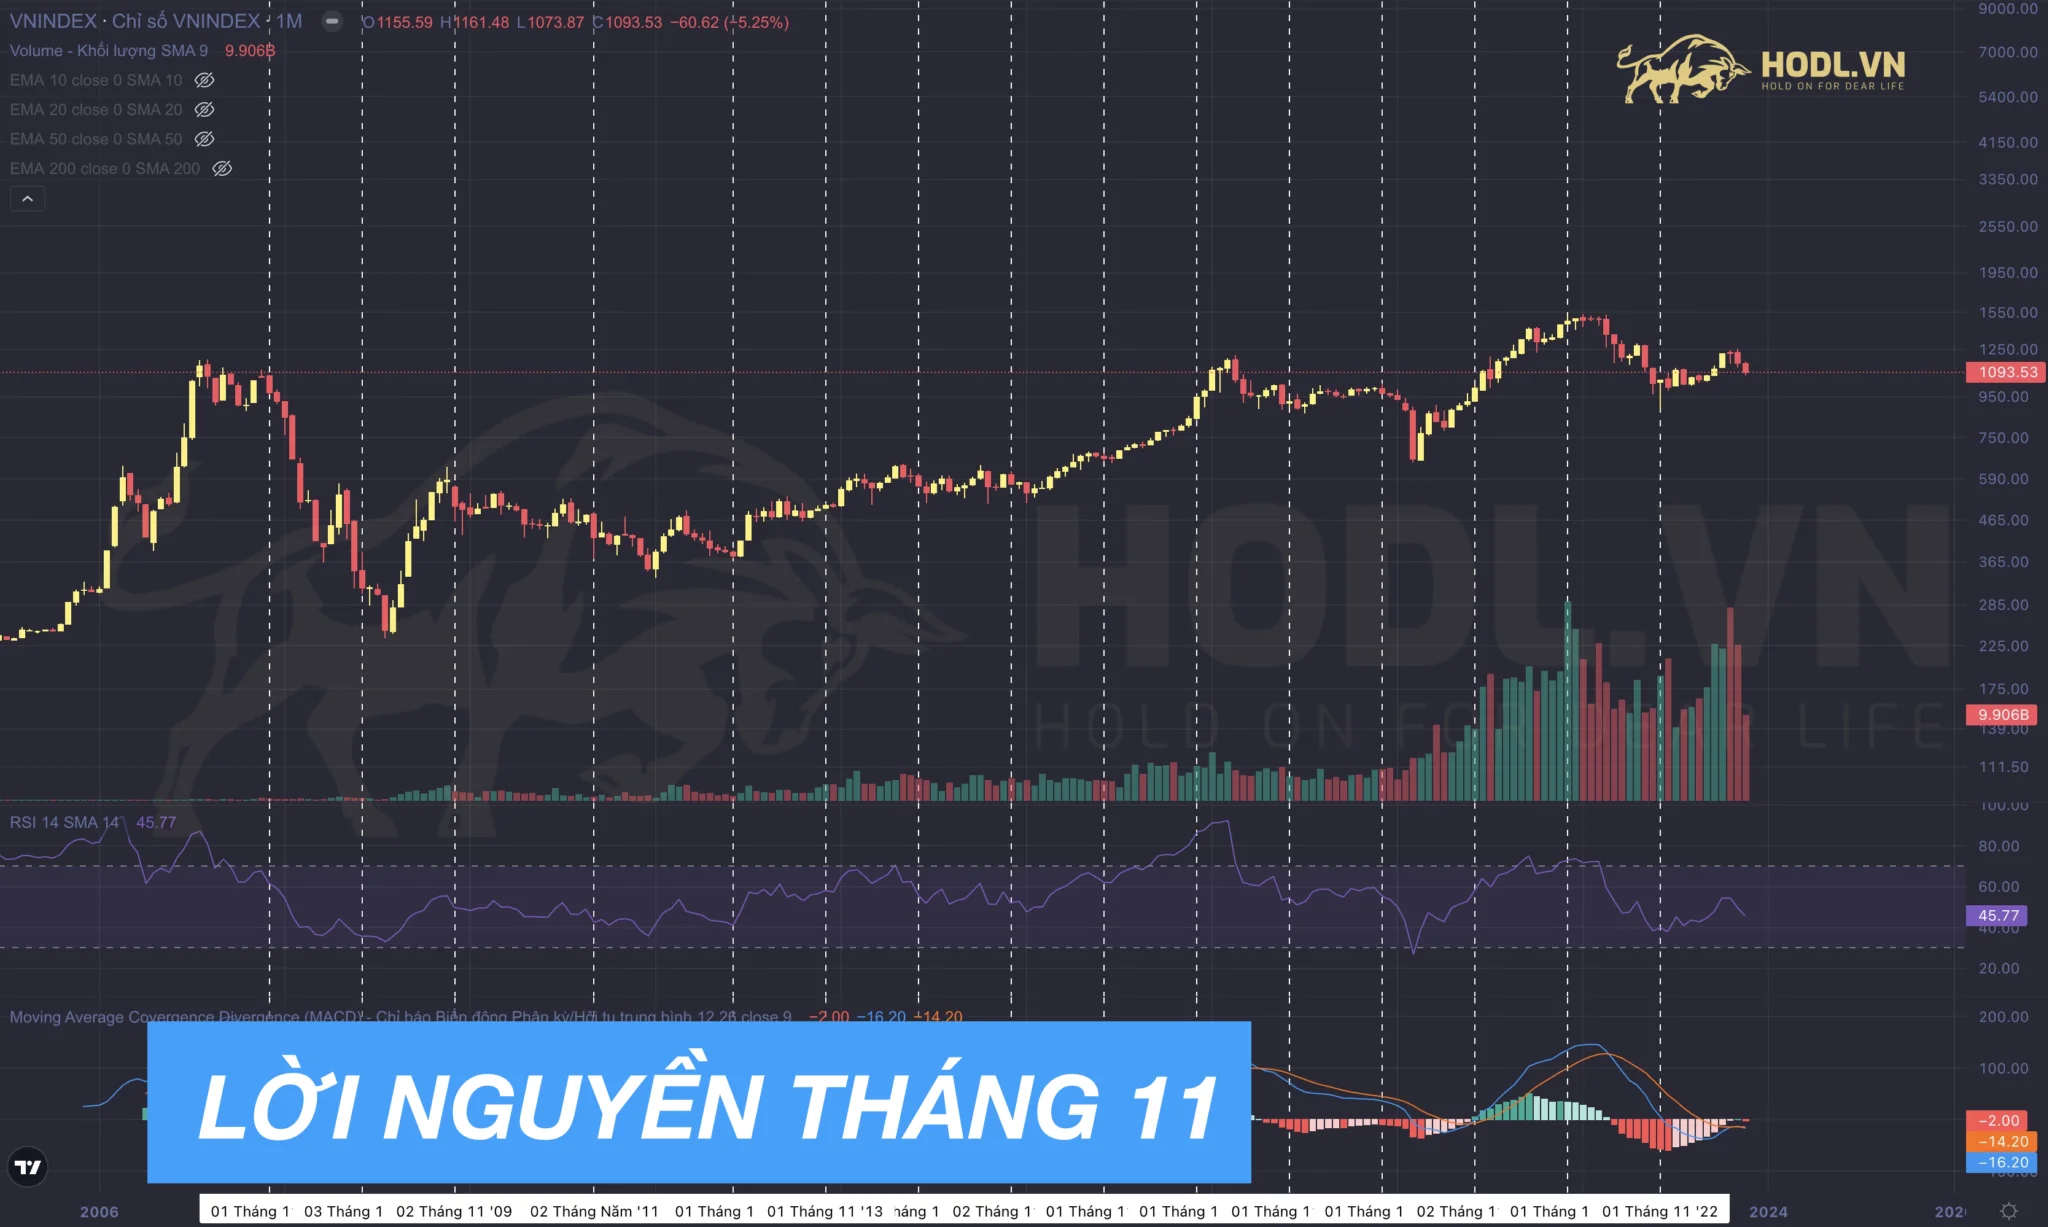 Lời nguyền tháng 11 trên thị trường chứng khoán Việt Nam